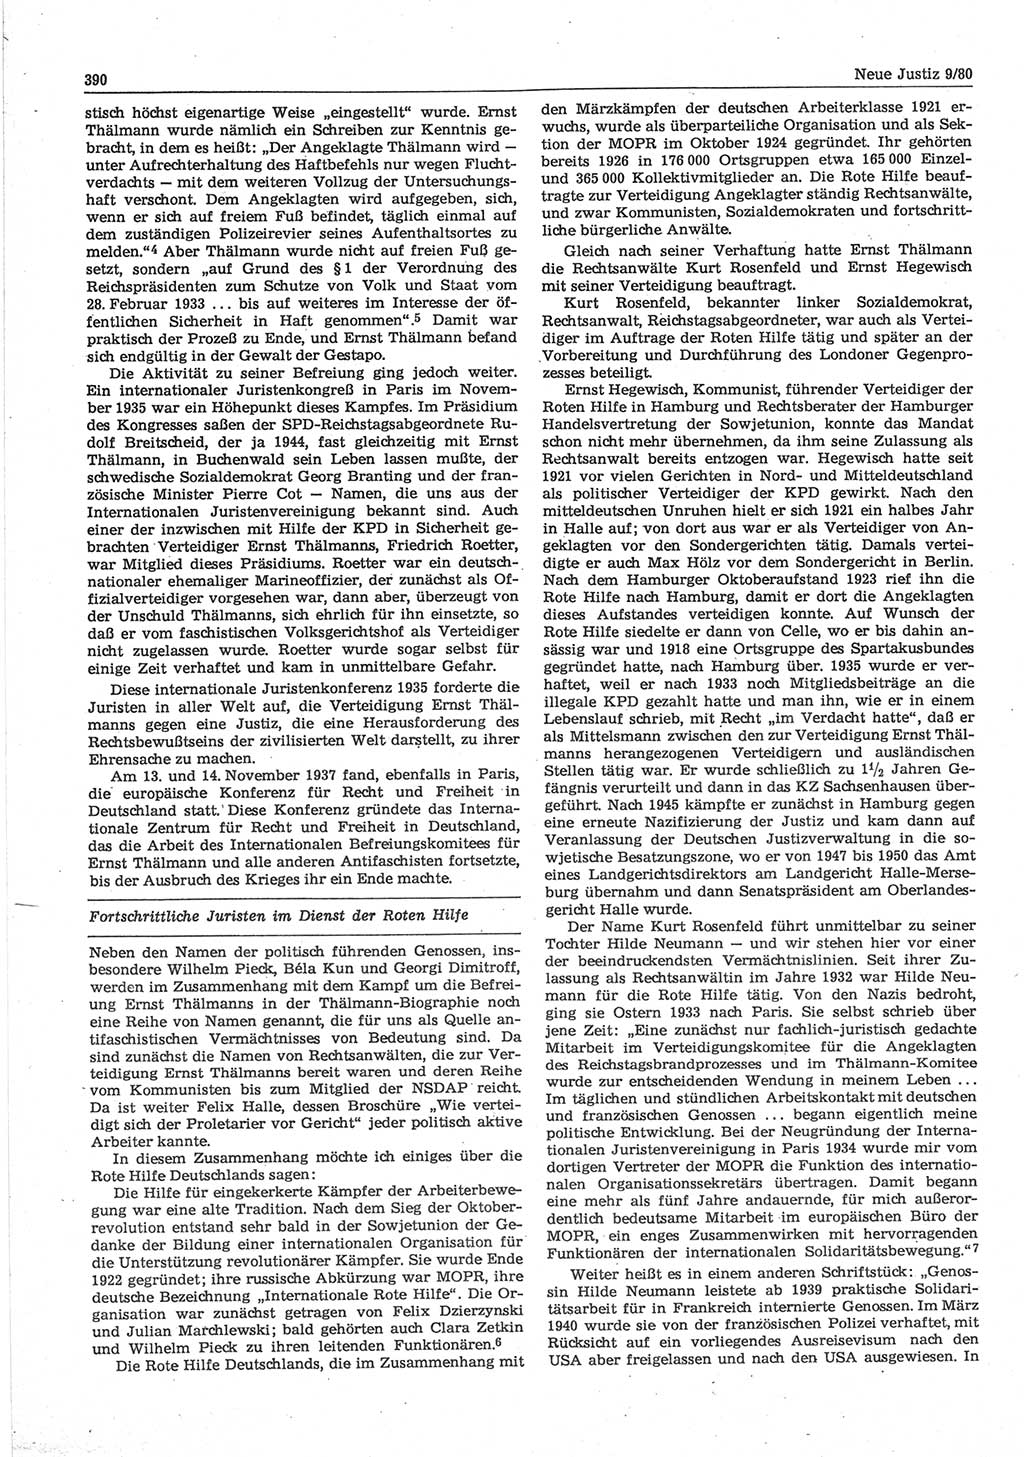 Neue Justiz (NJ), Zeitschrift für sozialistisches Recht und Gesetzlichkeit [Deutsche Demokratische Republik (DDR)], 34. Jahrgang 1980, Seite 390 (NJ DDR 1980, S. 390)